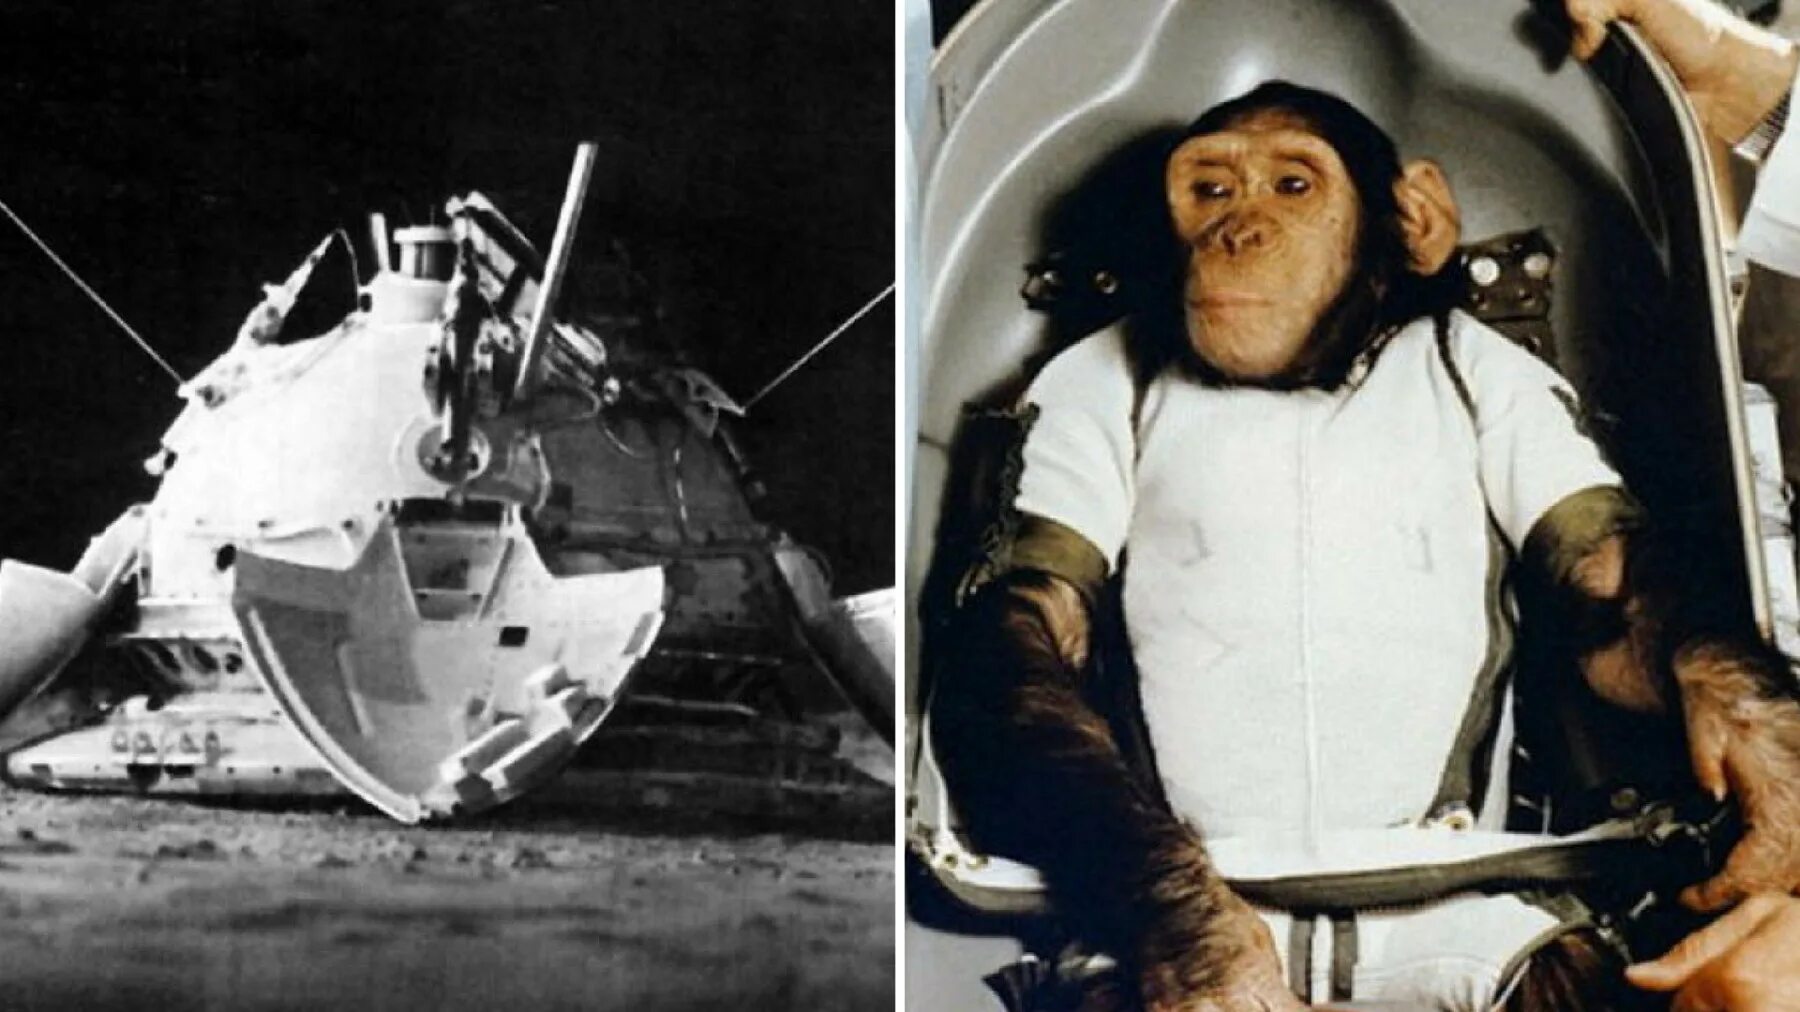 Обезьяны первыми полетели в космос. Обезьяны в космосе 1959 Эйбл и Бейкер. Шимпанзе Хэм космонавт.